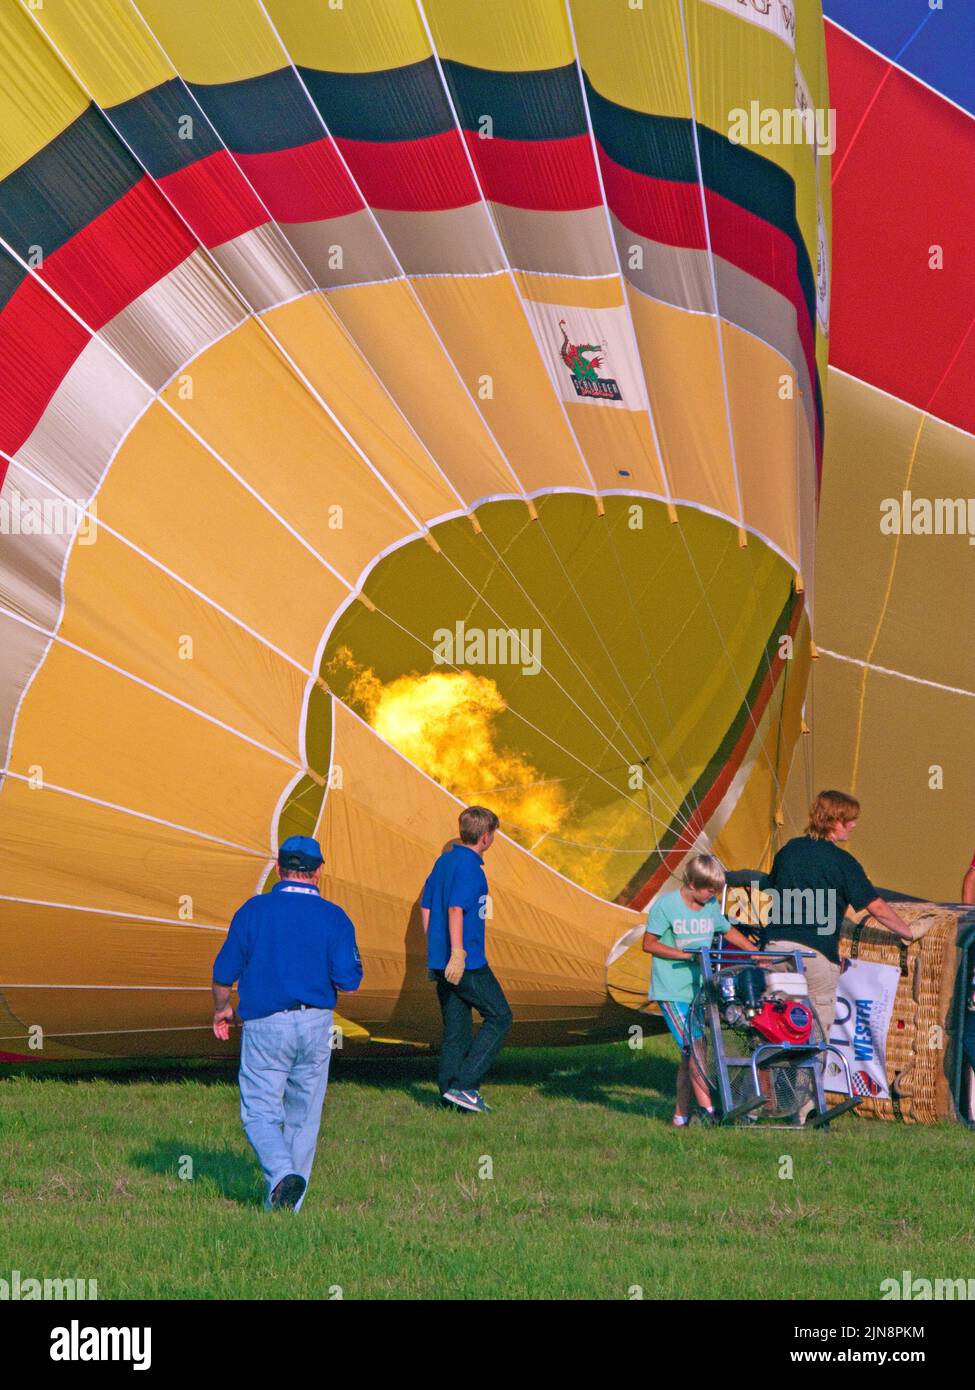 Preparación de globos aerostáticos para el vuelo, Mosel-Ballon-Festival en el aeropuerto de Trier-Foehren, Renania-Palatinado, Alemania, Europa Foto de stock